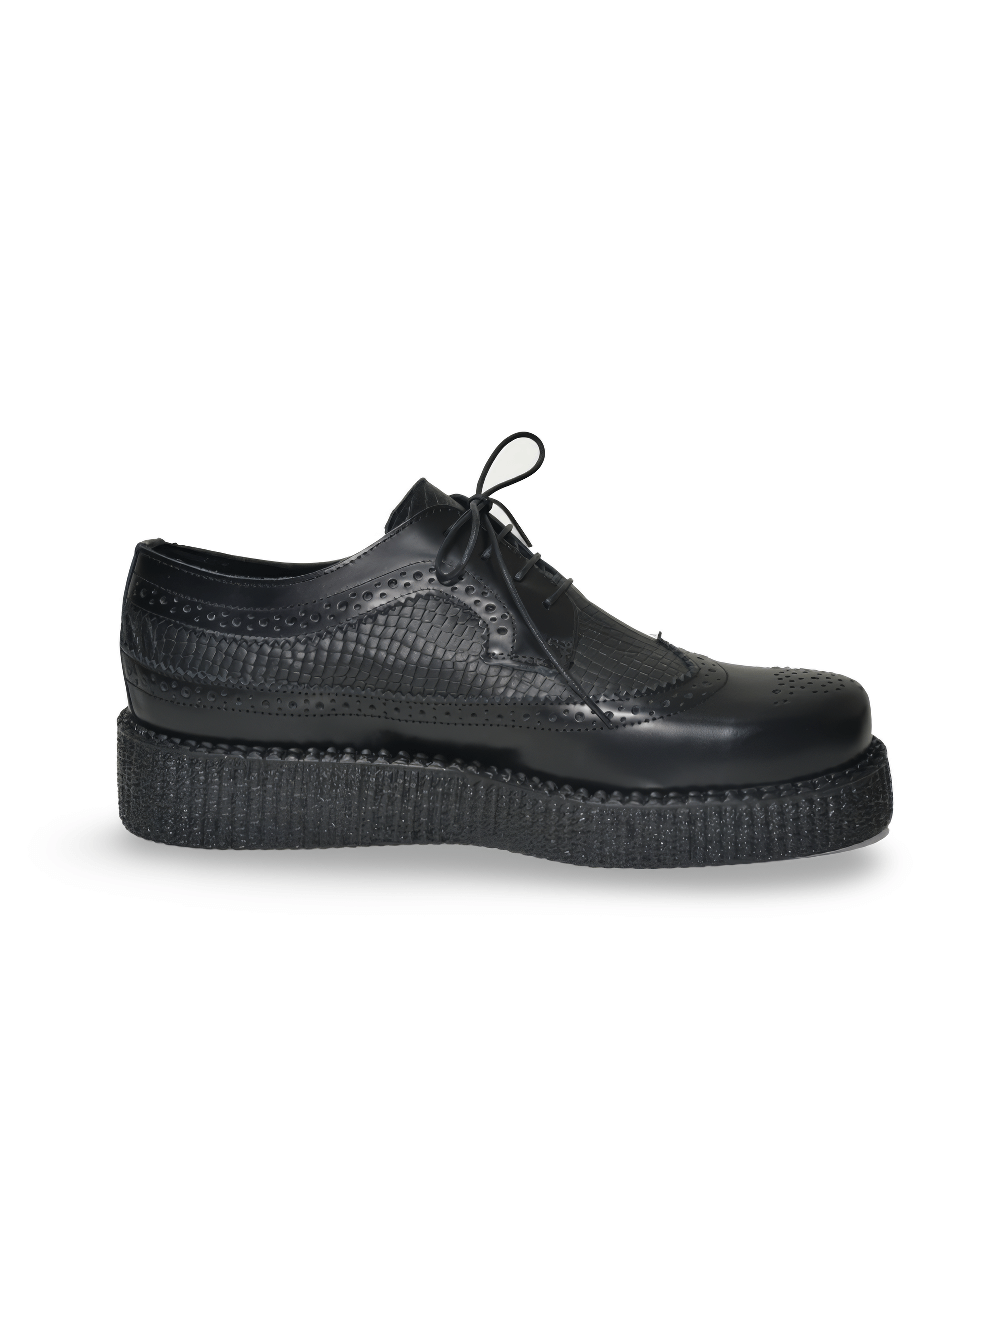 Unisex-Derby-Schuhe aus schwarzem Leder zum Schnüren mit Gummisohle